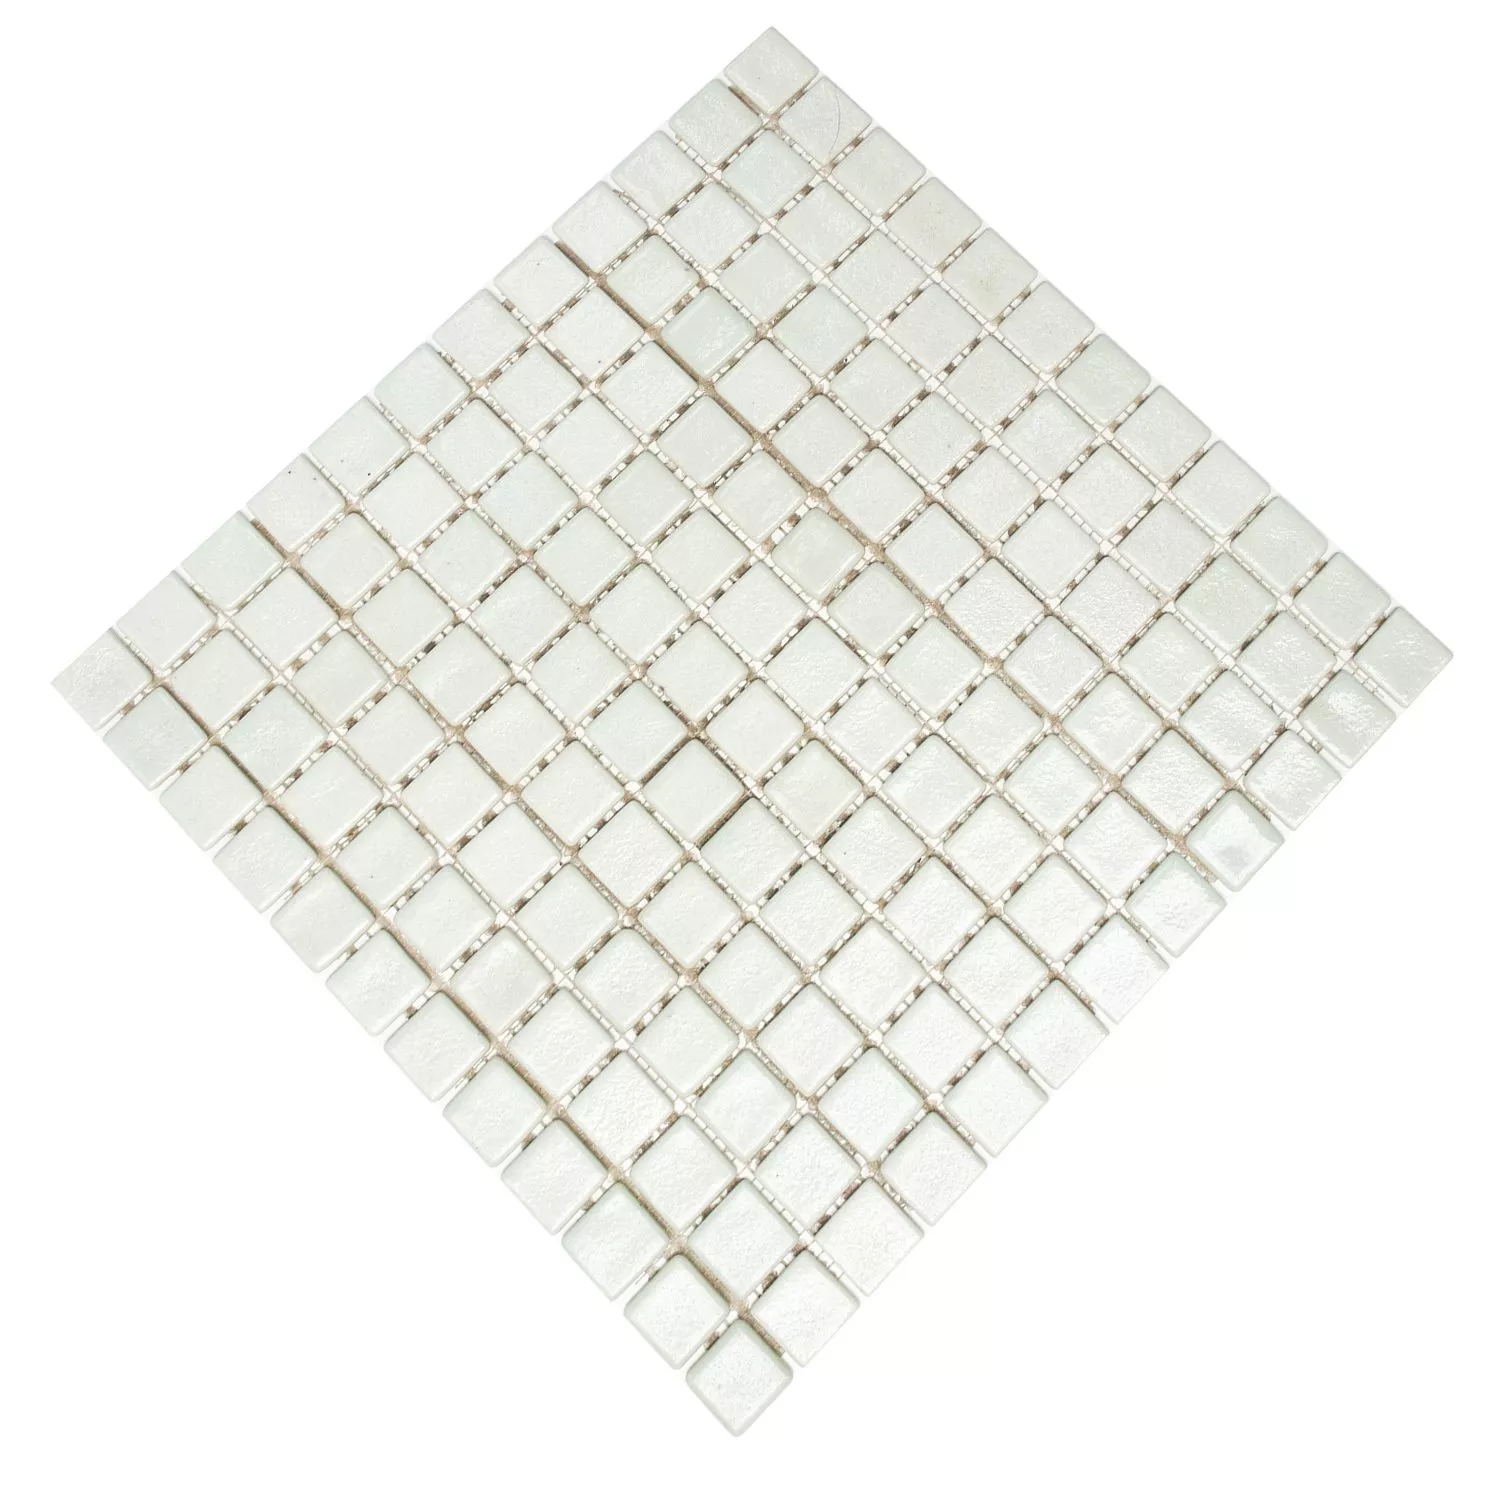 Mosaic Tiles Glass White Uni Non Slip